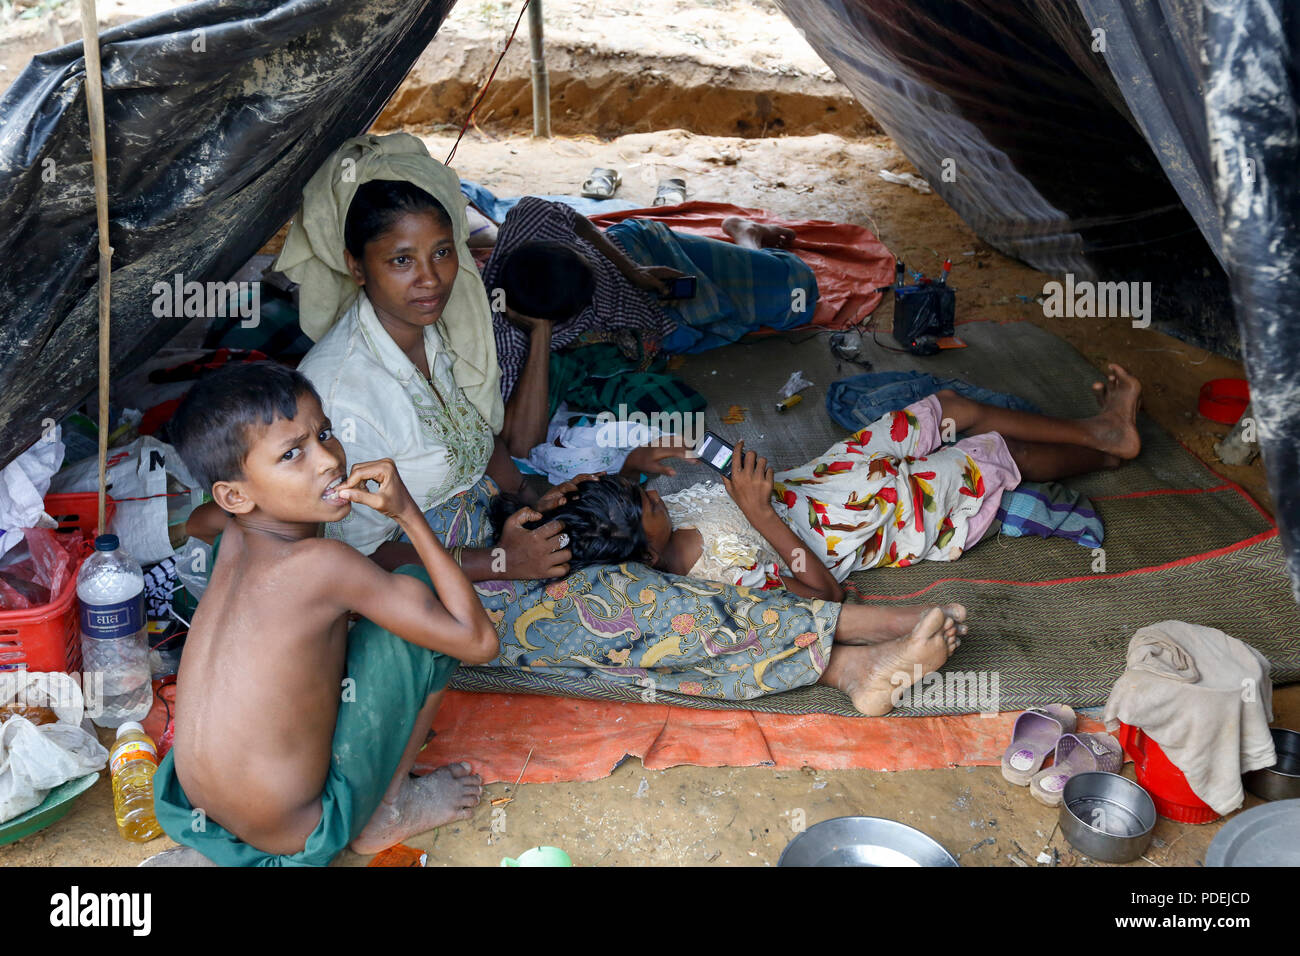 Recién llegado refugiados Rohingya en su refugio en Kutupalong, Cox's Bazar, Bangladesh Foto de stock